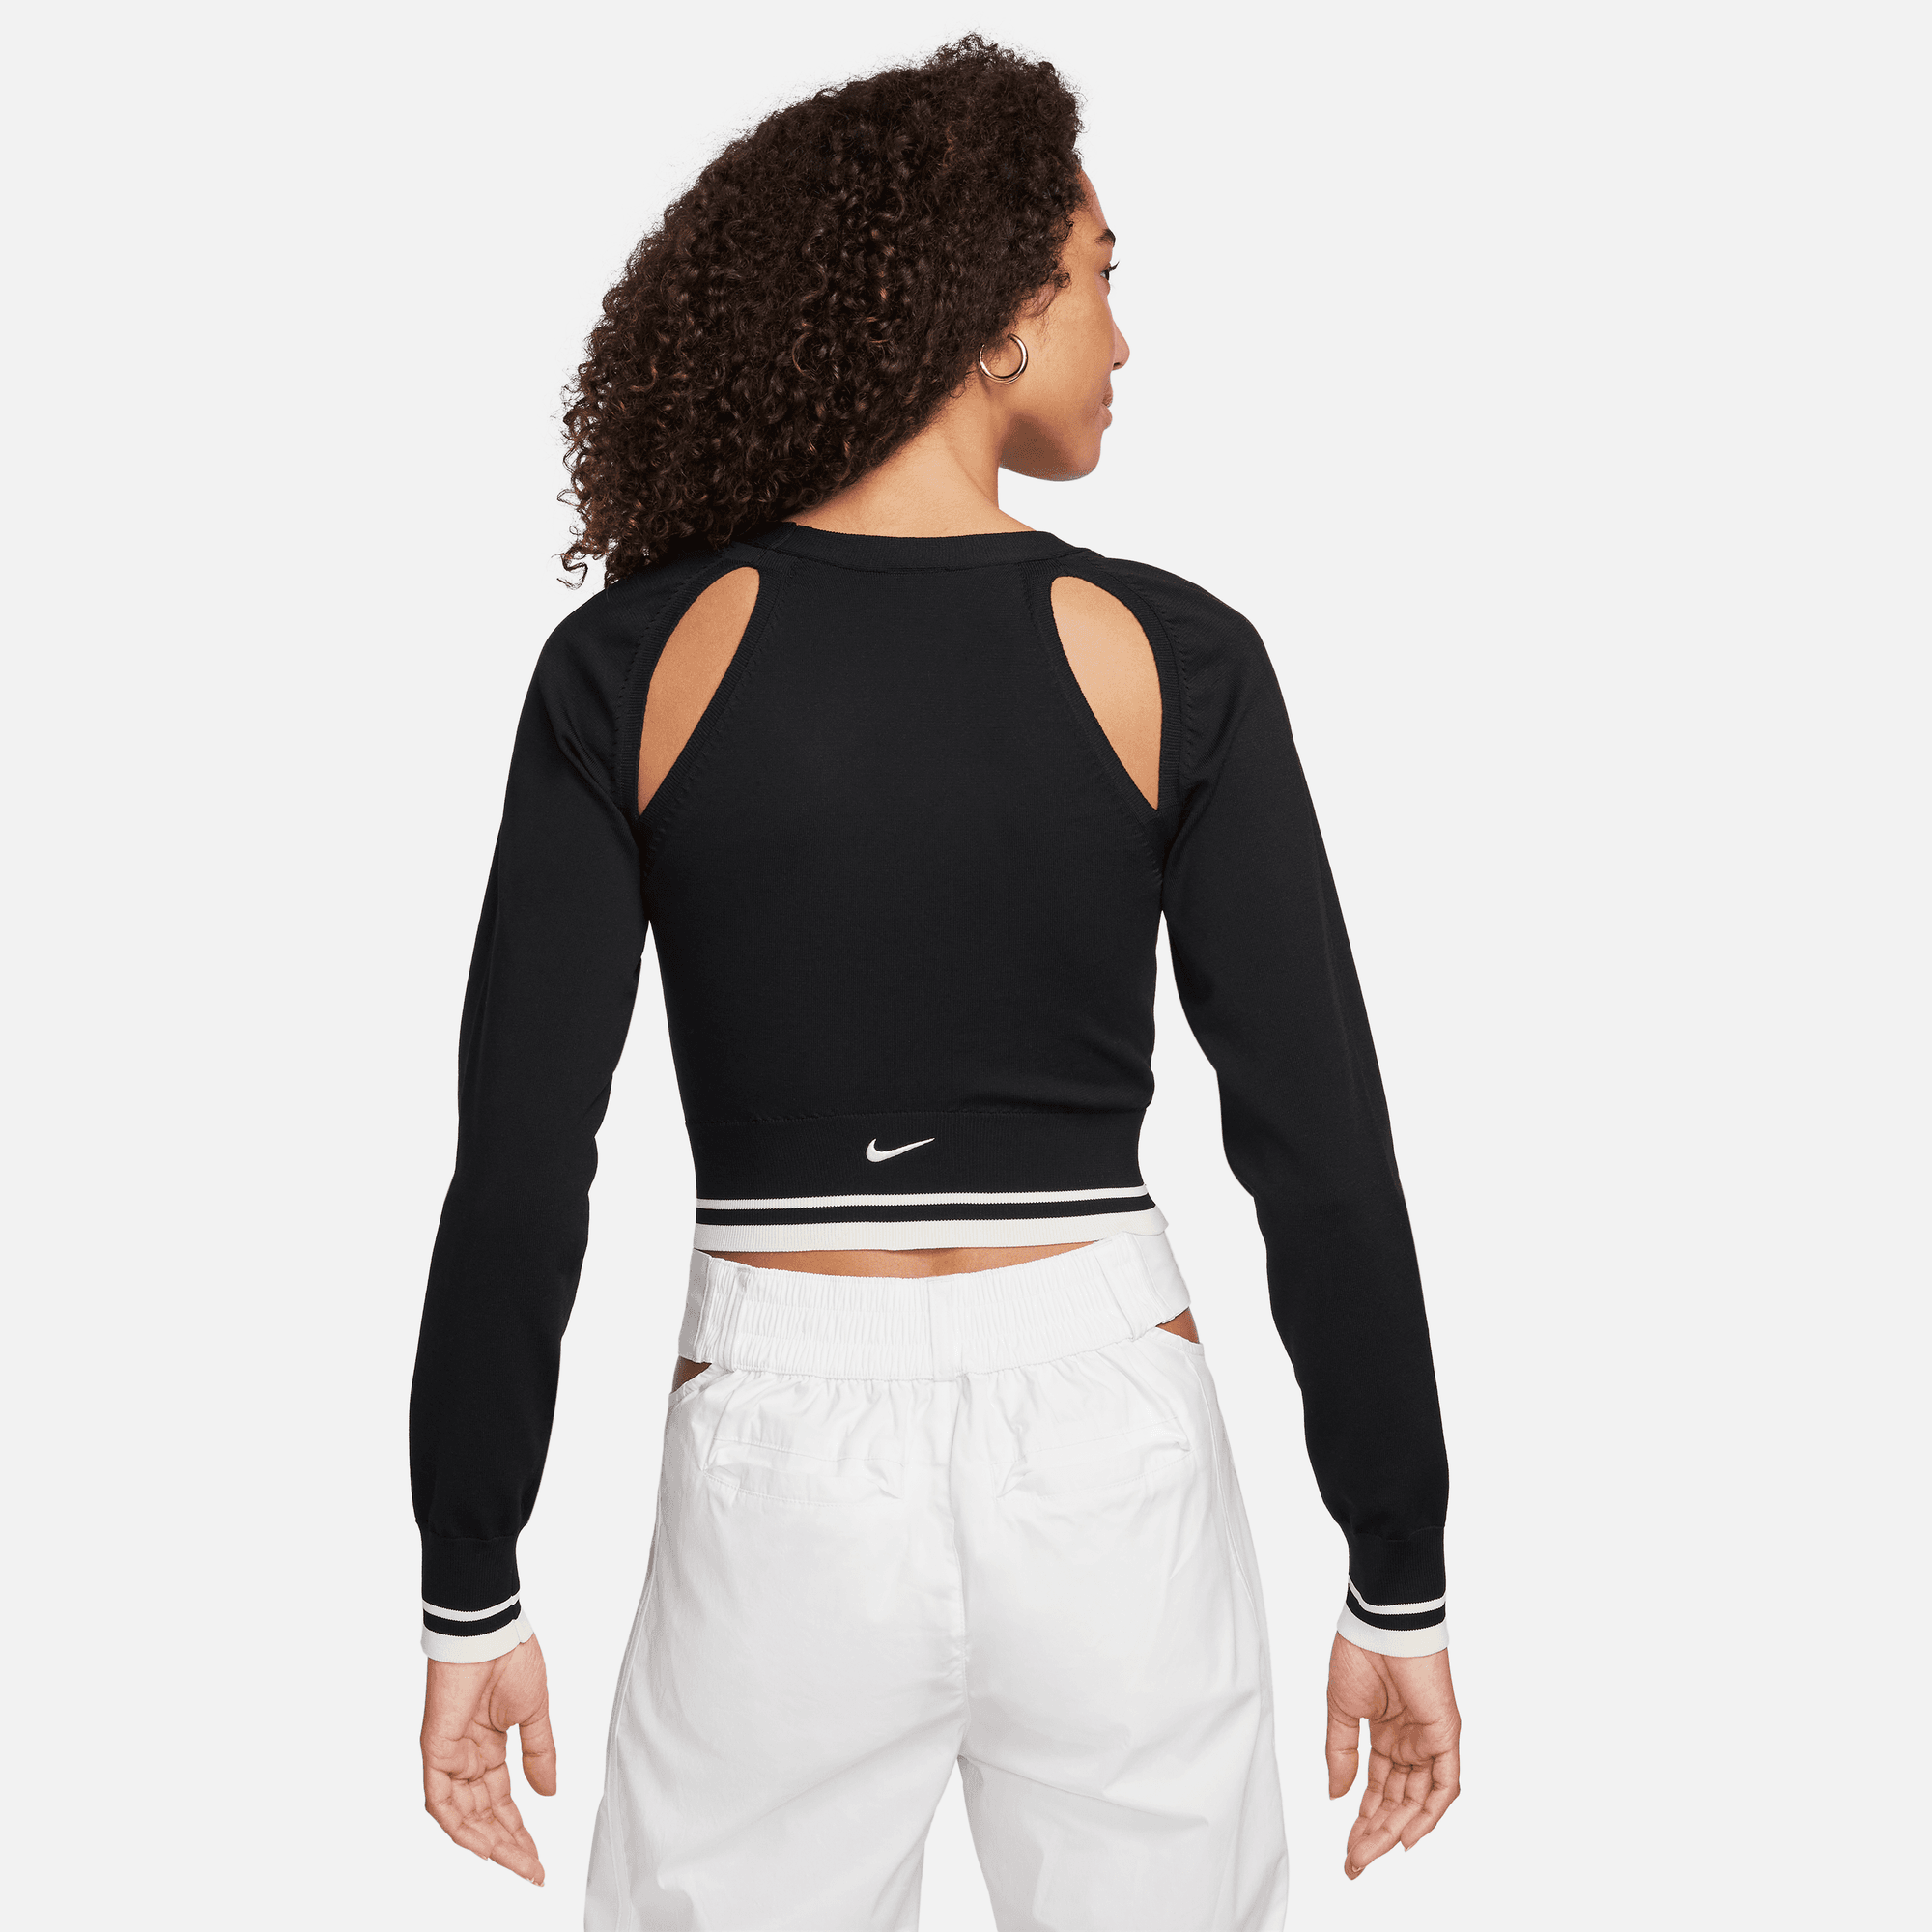 Nike Sportswear Women's Black Long-Sleeve Knit Cardigan